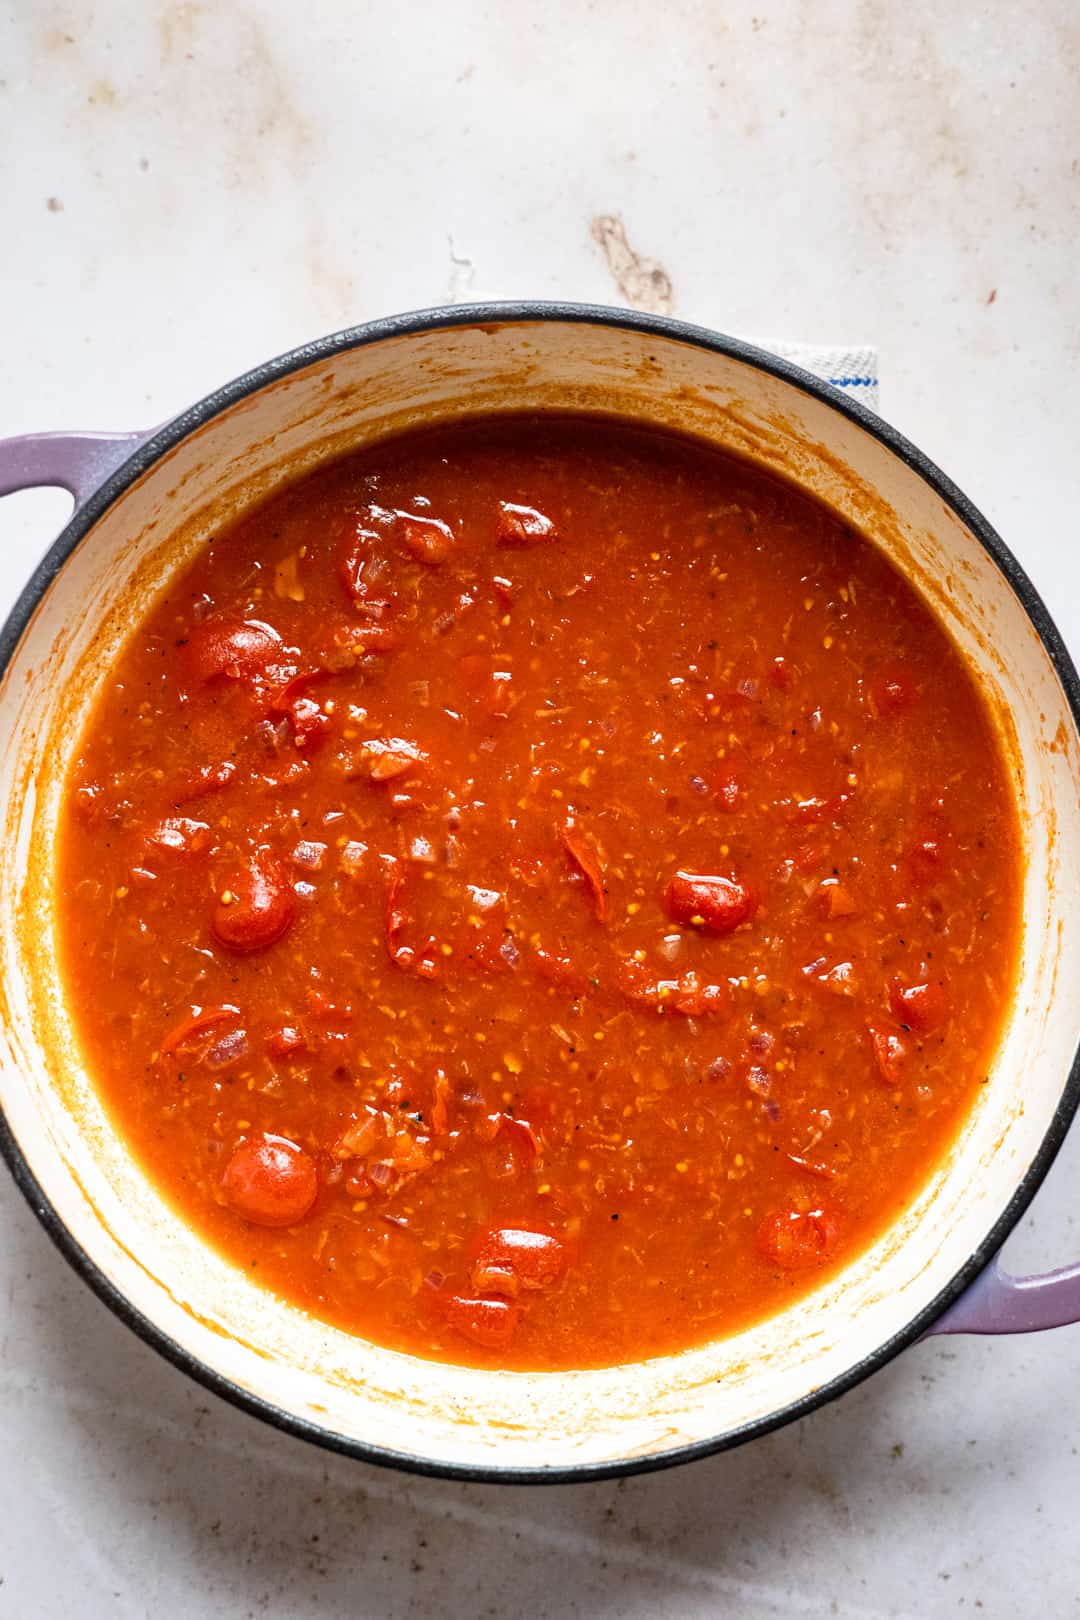 Tomato sauce for vegetable pasta bake.